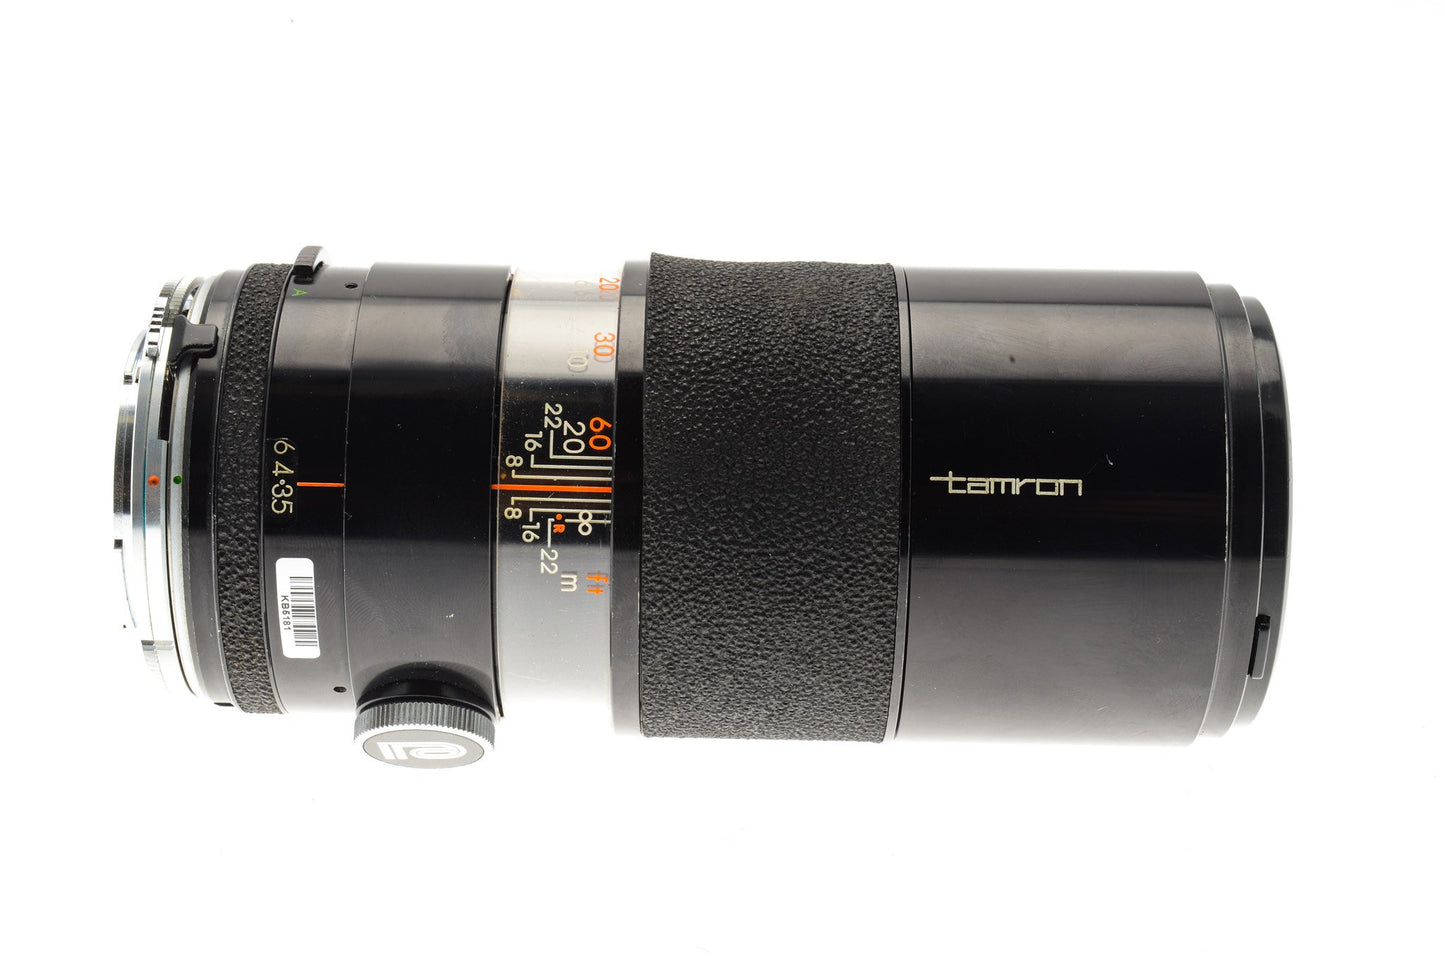 Tamron 200mm f3.5 - Lens